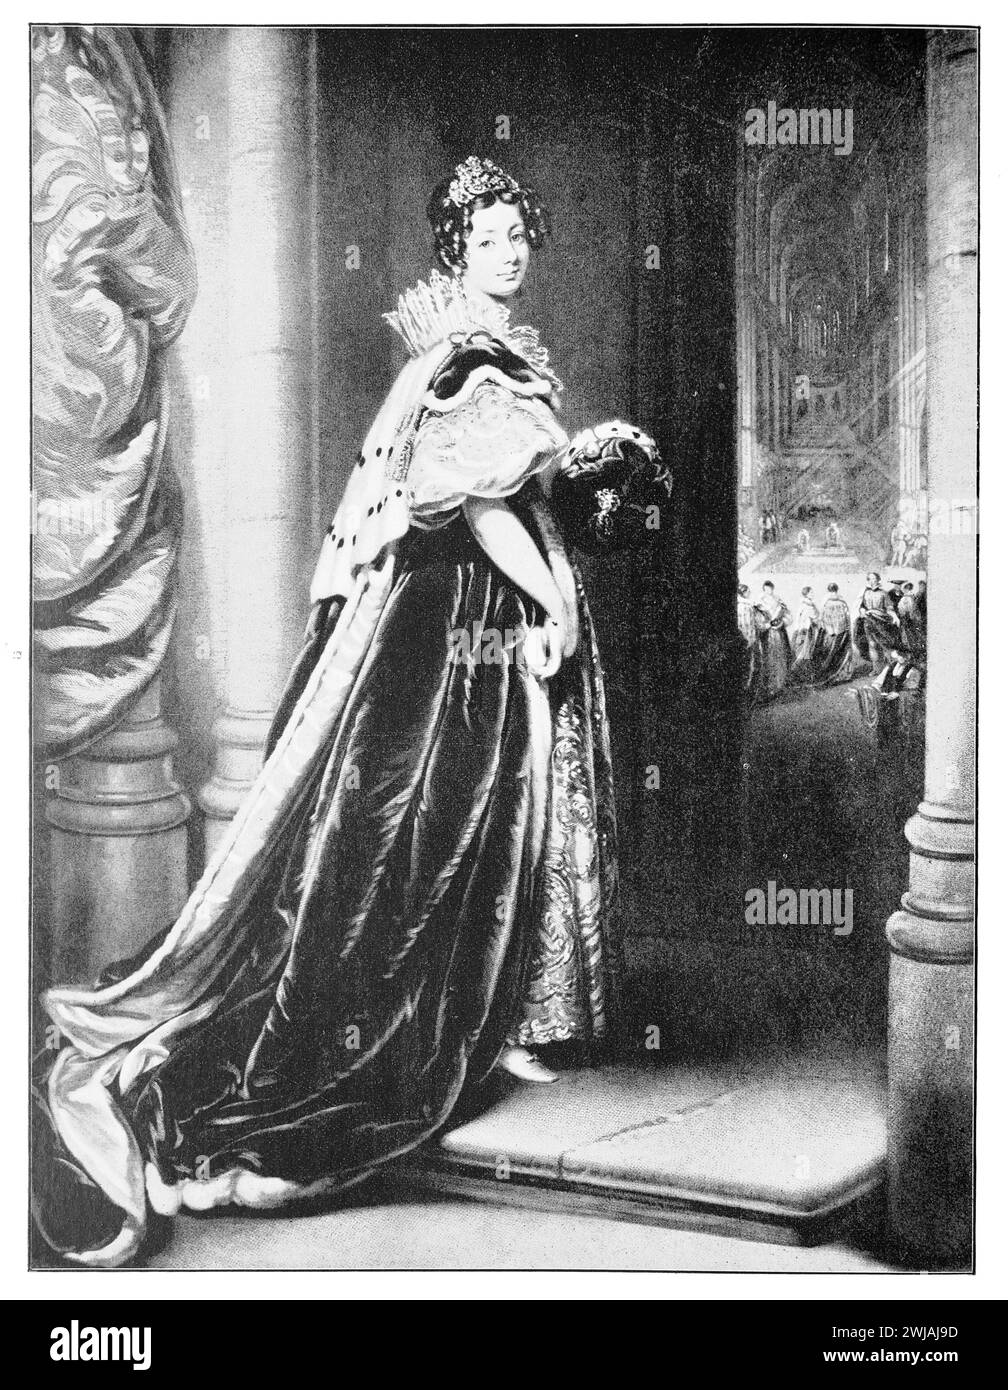 Portrait de Louisa Barbara Trefusis, Lady Rolle (c1795 - 1885), dans les robes qu'elle portait lors du couronnement du roi Guillaume IV d'Angleterre. Illustration en noir et blanc du Connoisseur, un magazine illustré pour collectionneurs Voll 3 (mai-août 1902) publié à Londres. Banque D'Images